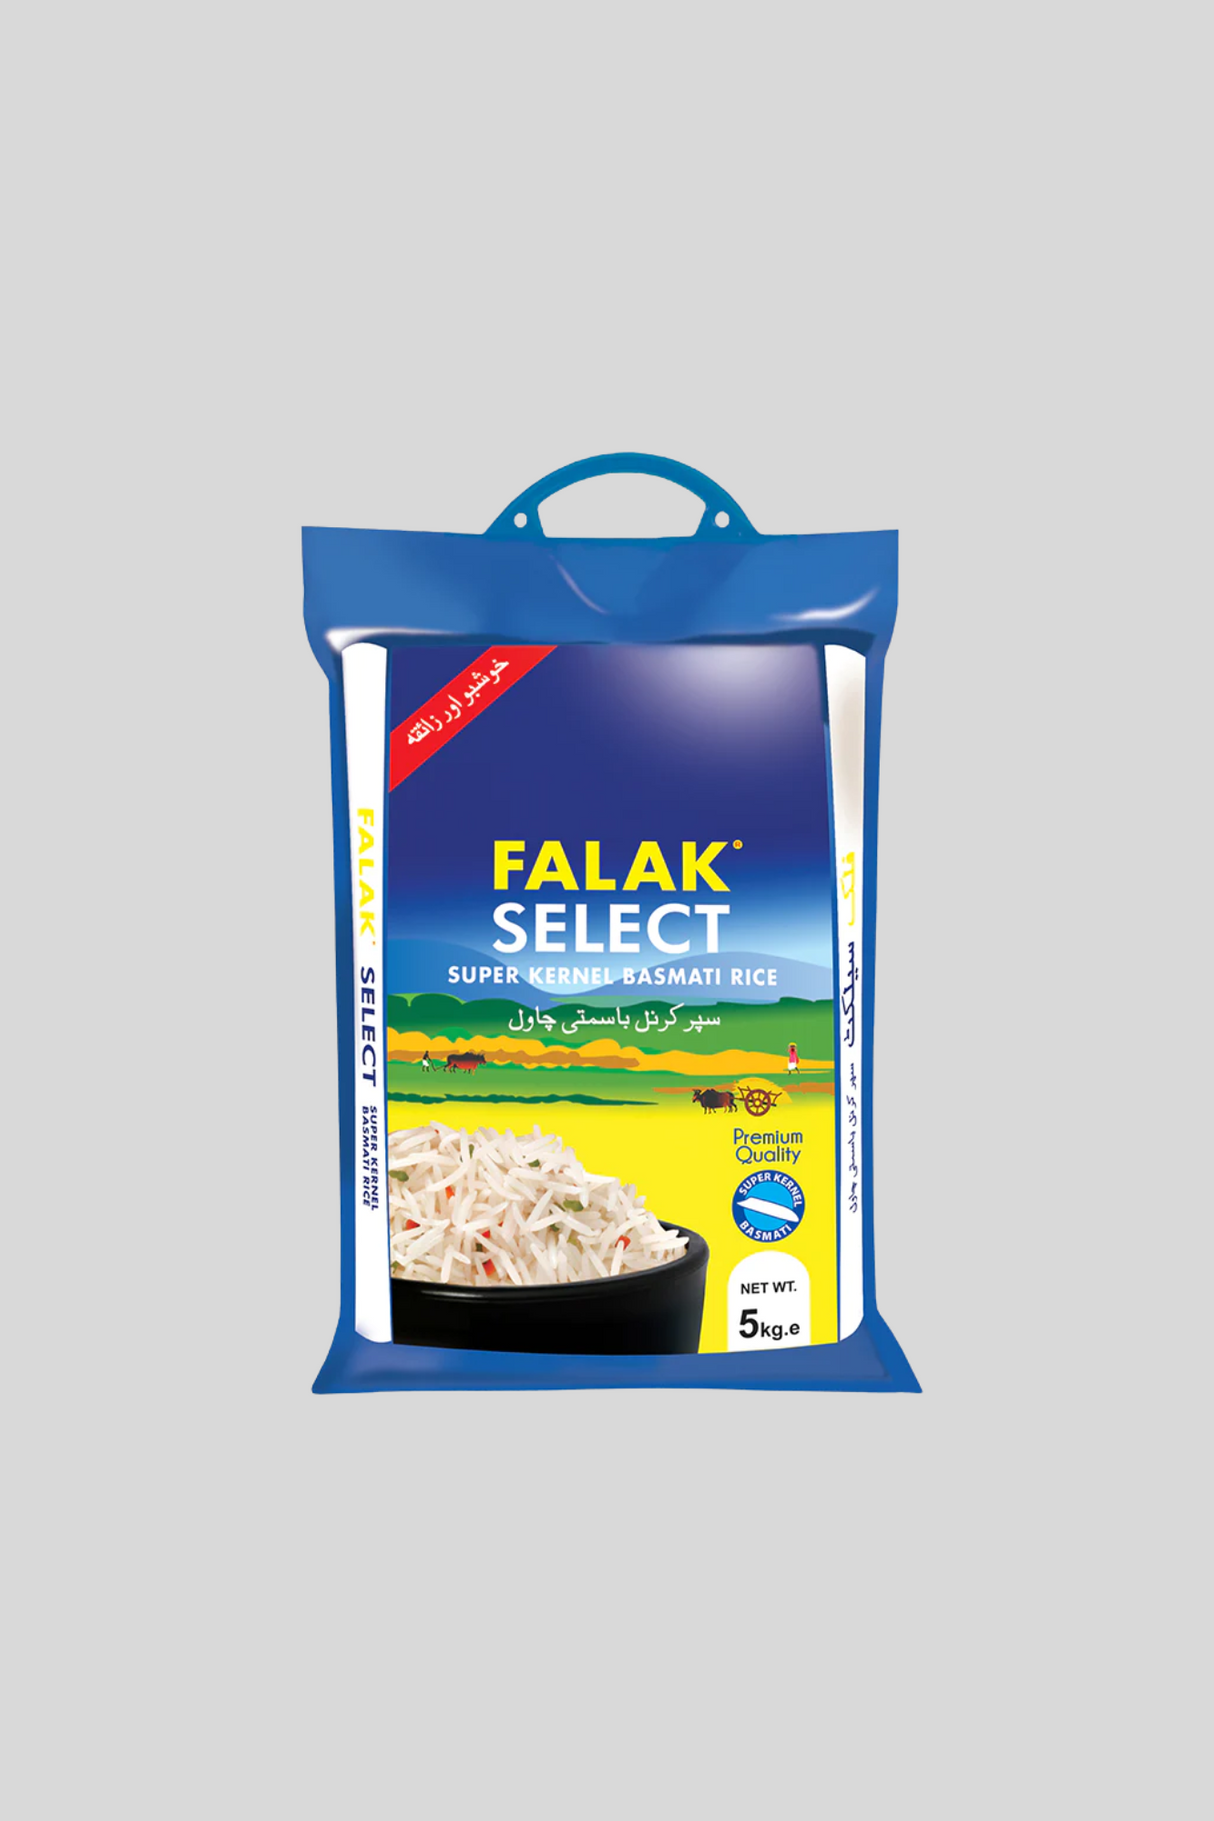 falak rice select basmati 5kg